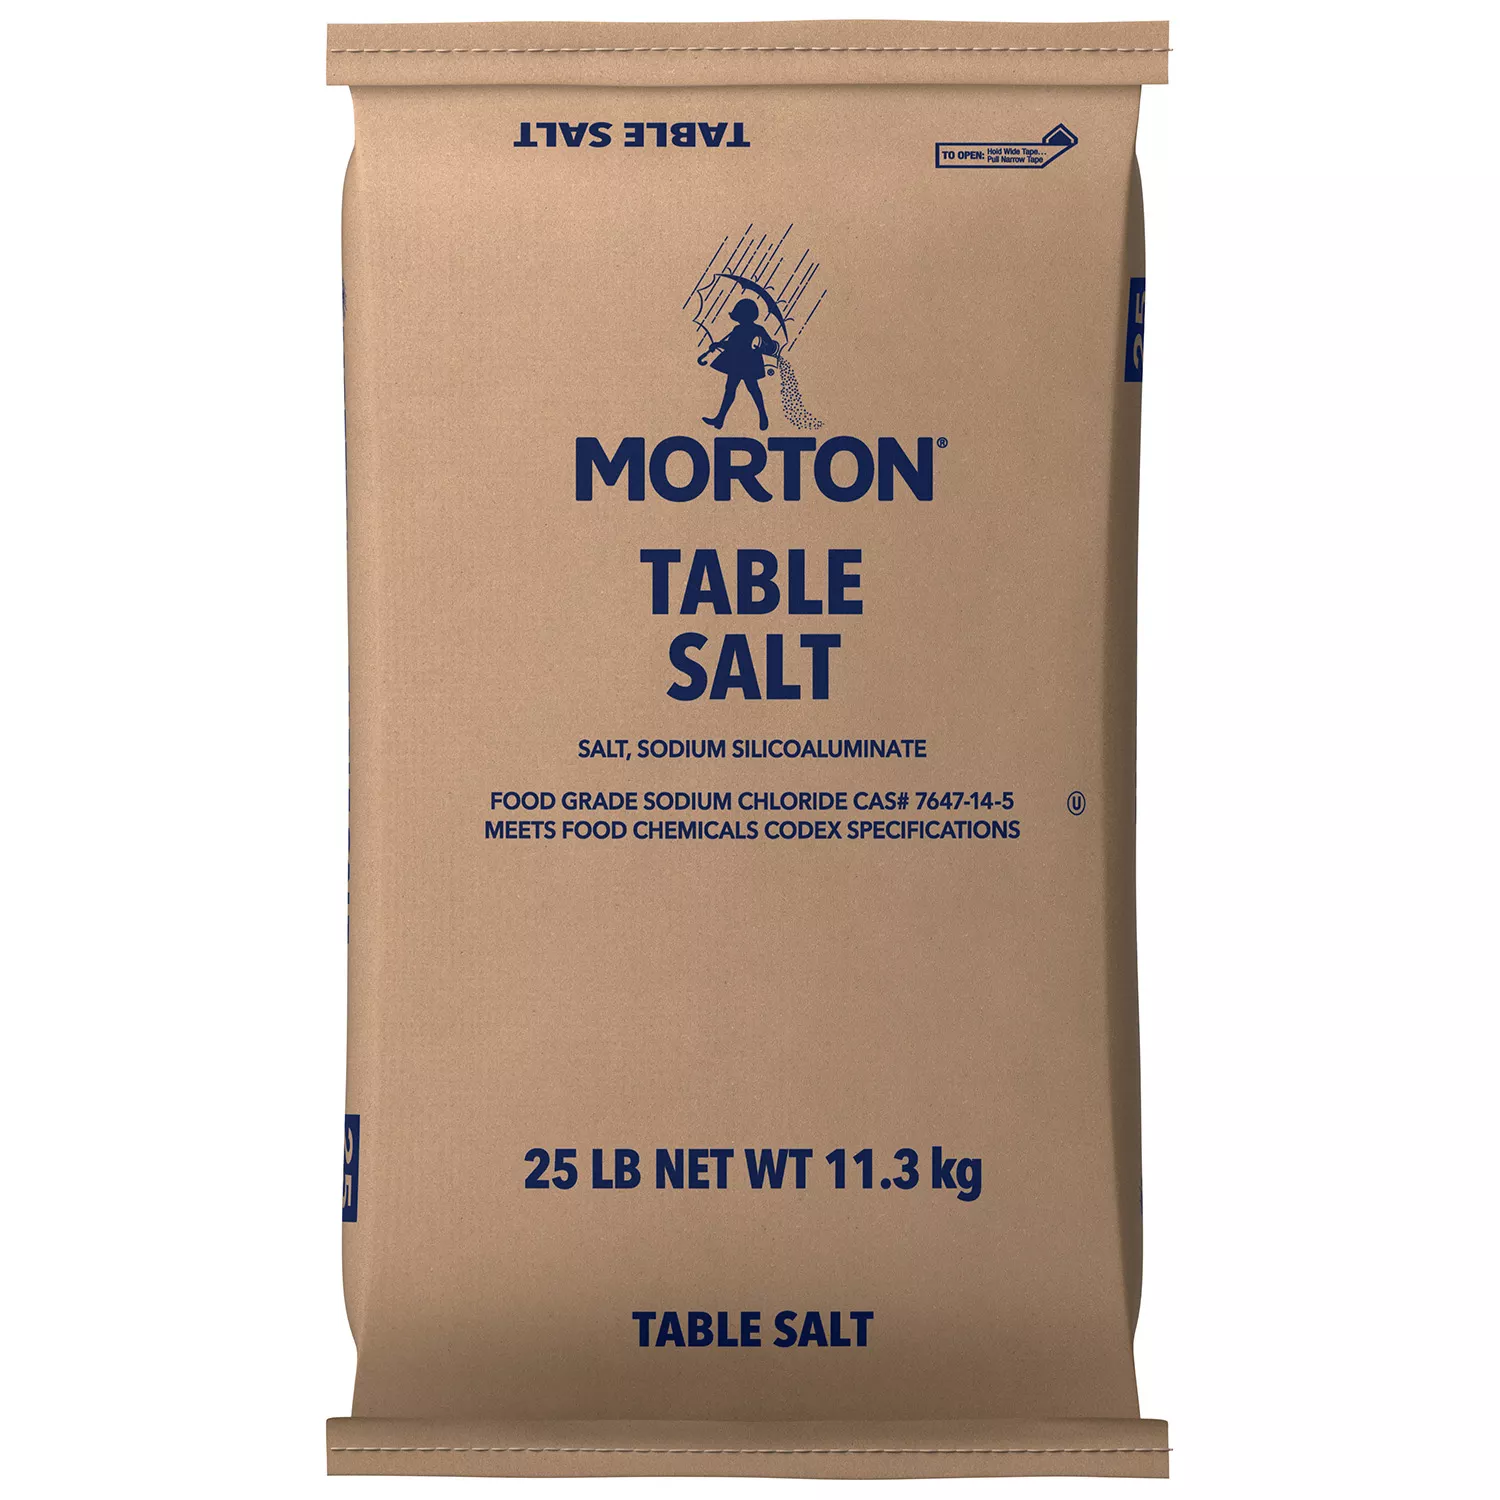 Morton Table Salt Bag